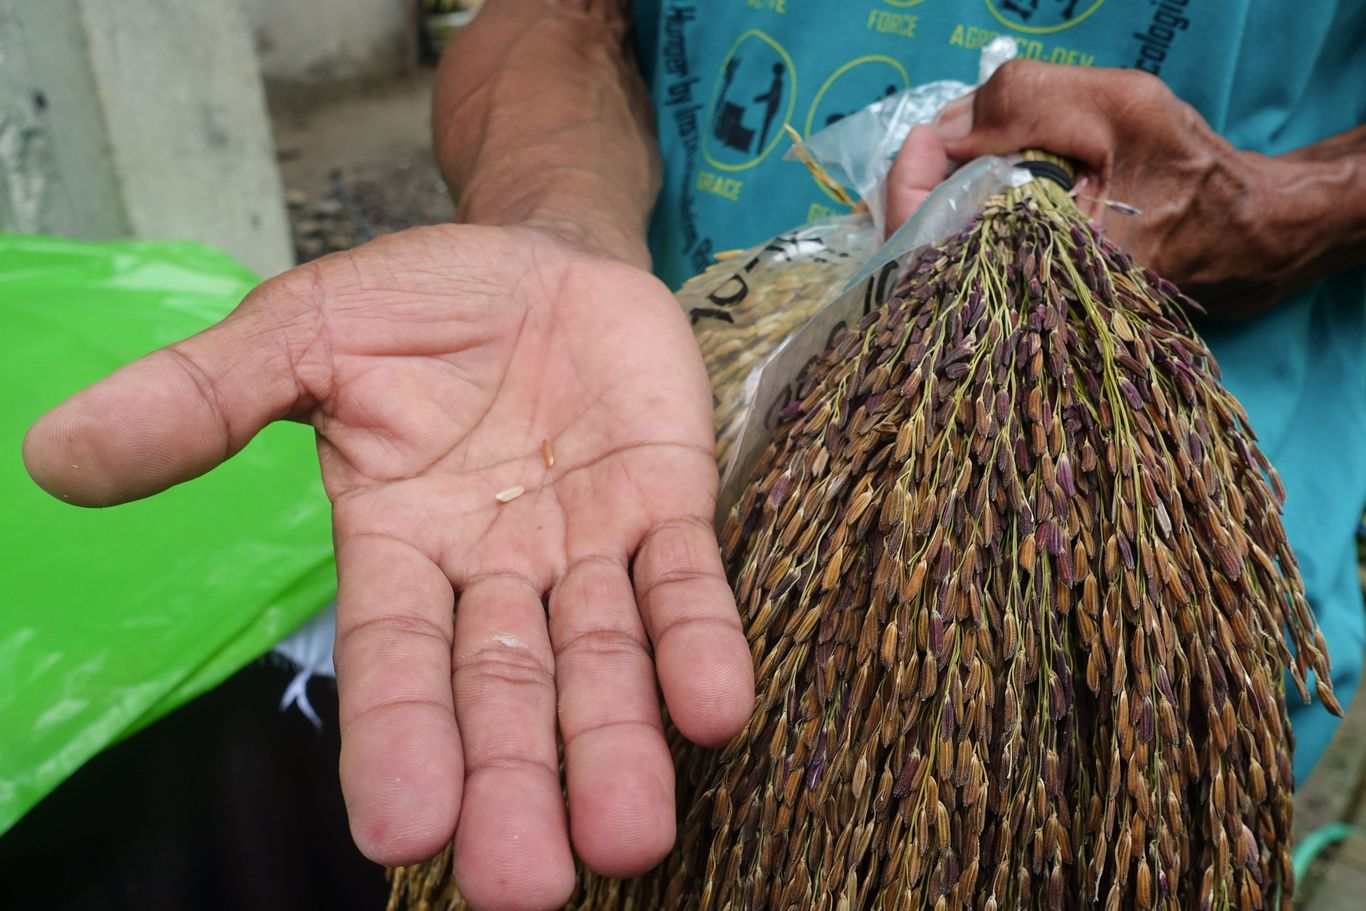 auf einer offenen Hand werden Reiskörner gezeigt und in der zweiten Hand wird ein Bund der Reispflanze gehalten